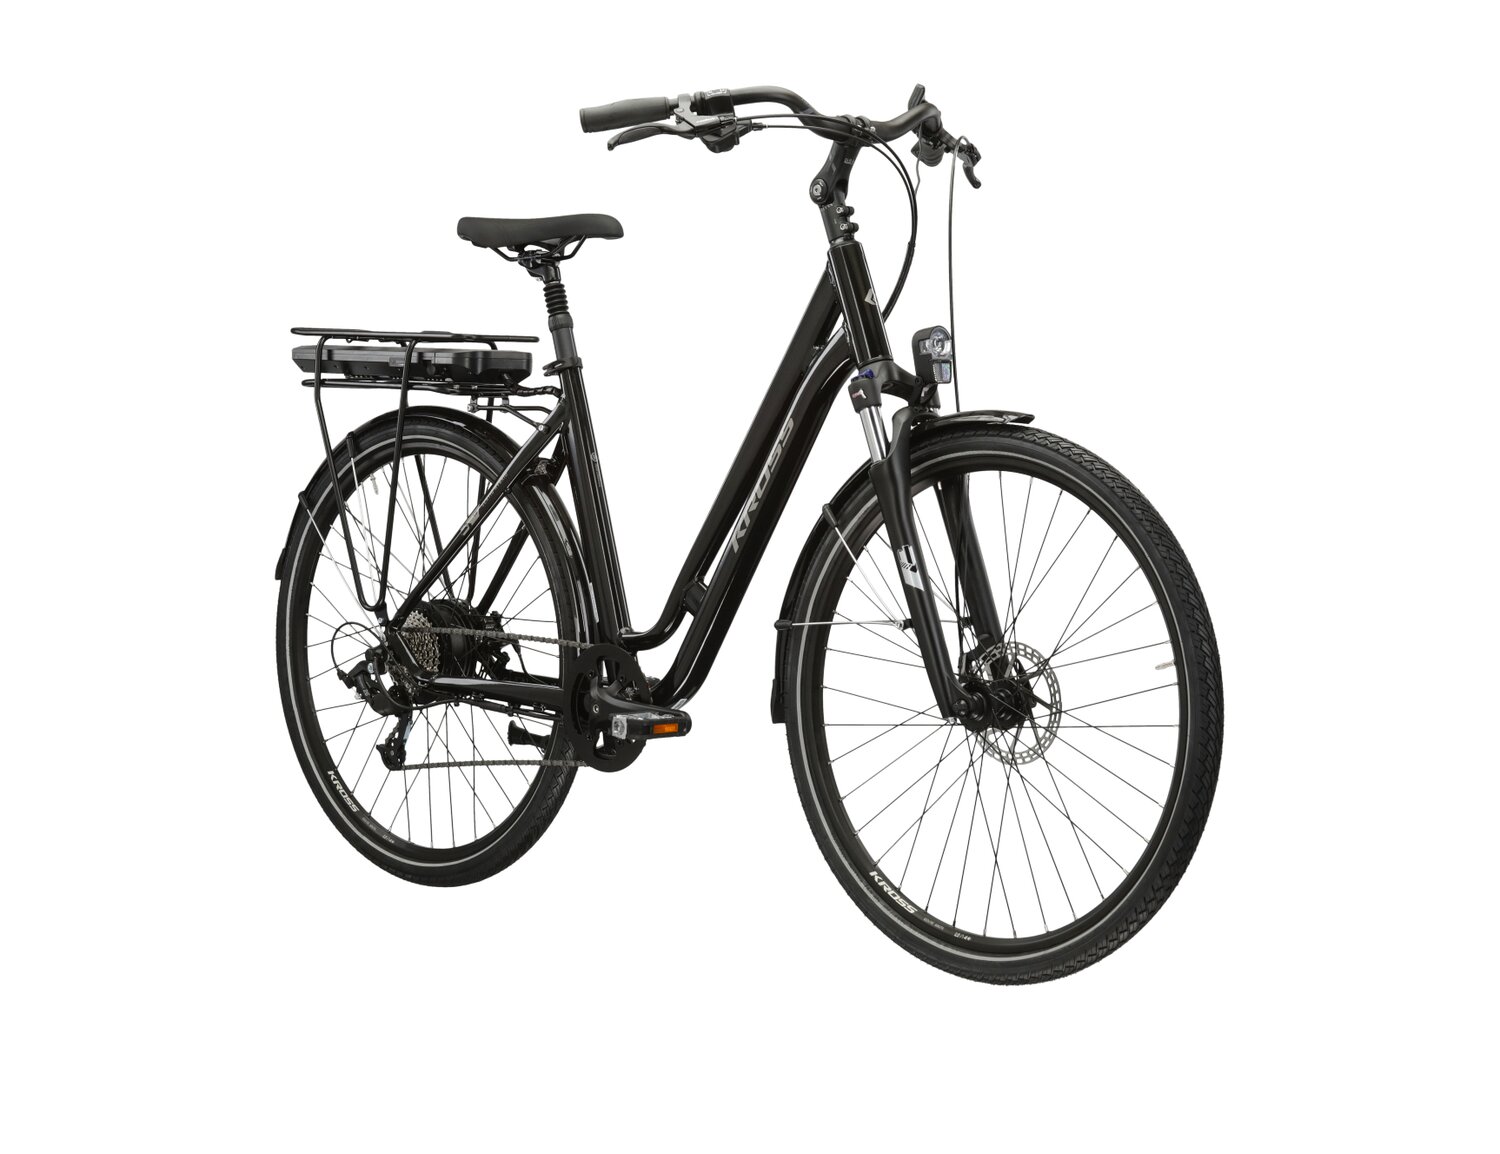  Elektryczny rower miejski Ebike City KROSS Sentio Hybrid 1.0 504 Wh na aluminiowej ramie w kolorze czarnym wyposażony w osprzęt Microshift i napęd elektryczny Bafang